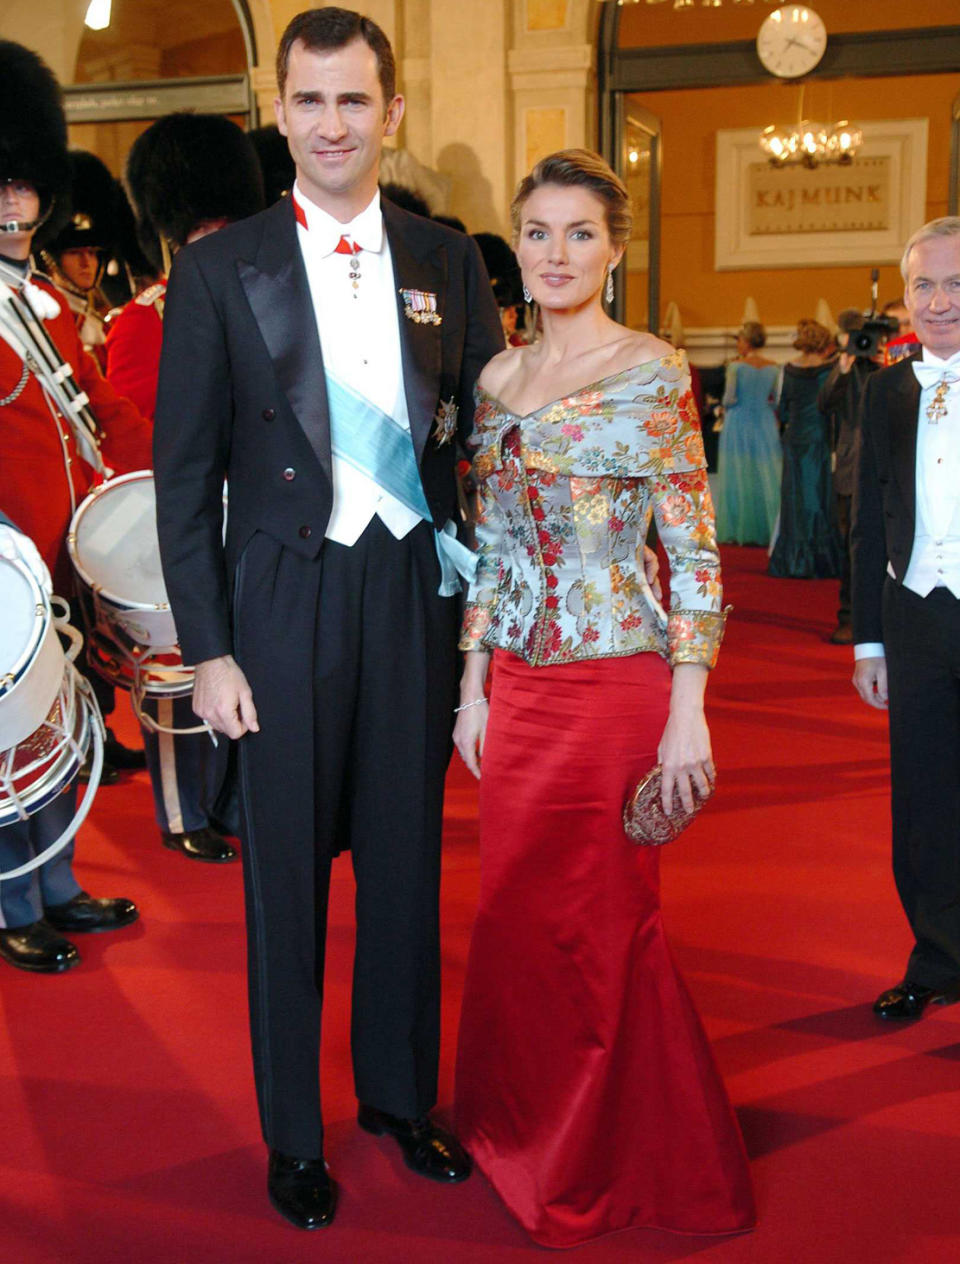 Zur Hochzeit von Prinz Frederik von Dänemark erschien Prinzessin Letizia wieder in einem eher altmodischem Kleid. Das Dress bestand aus einem Korsett und einem schlichten Rock.